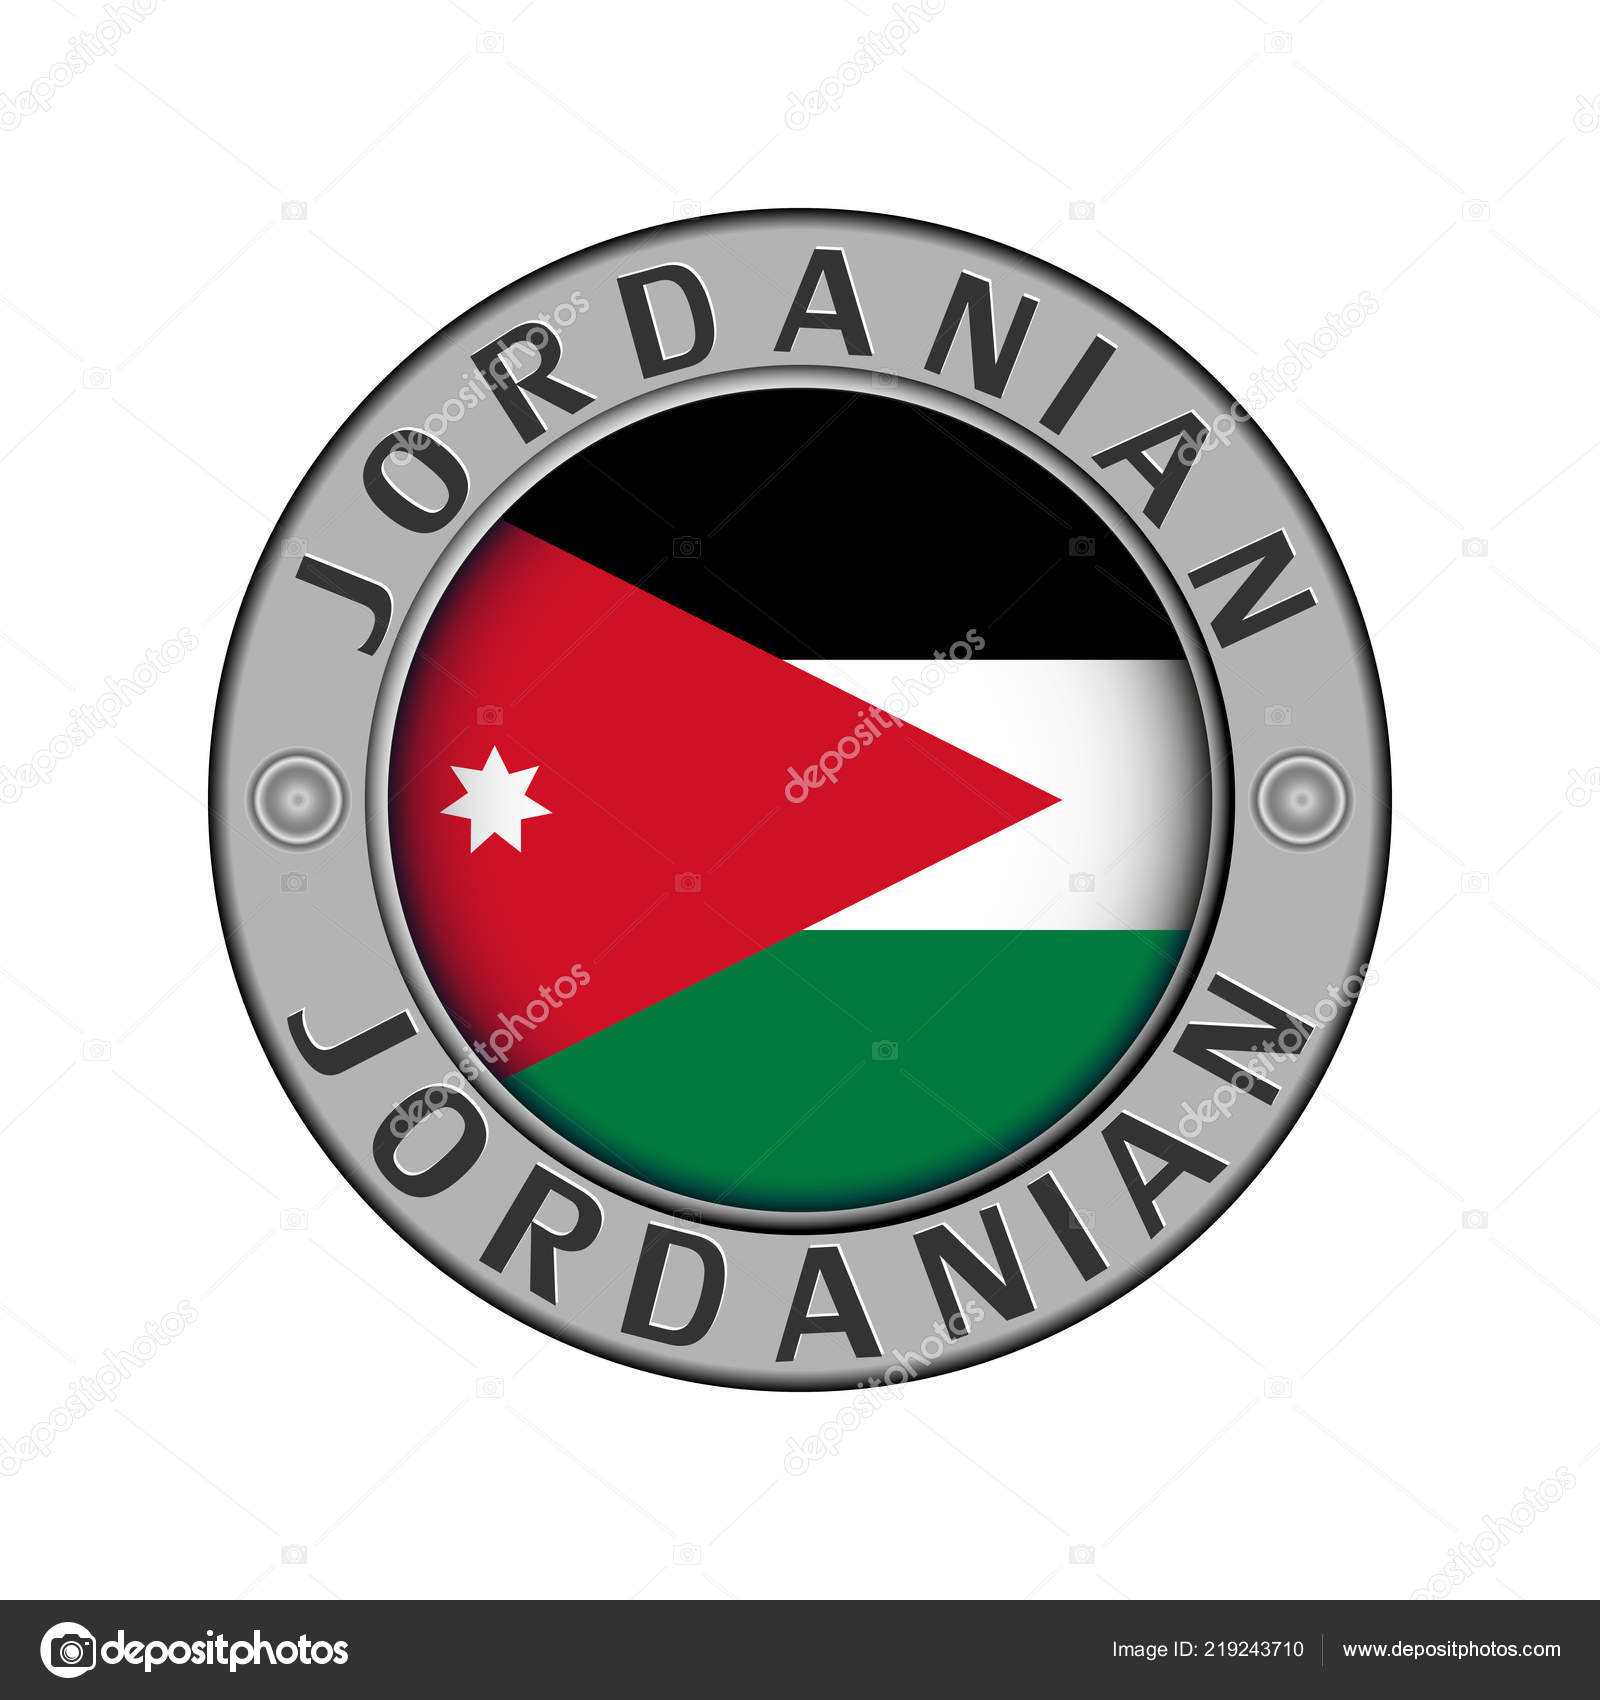 jordan country name